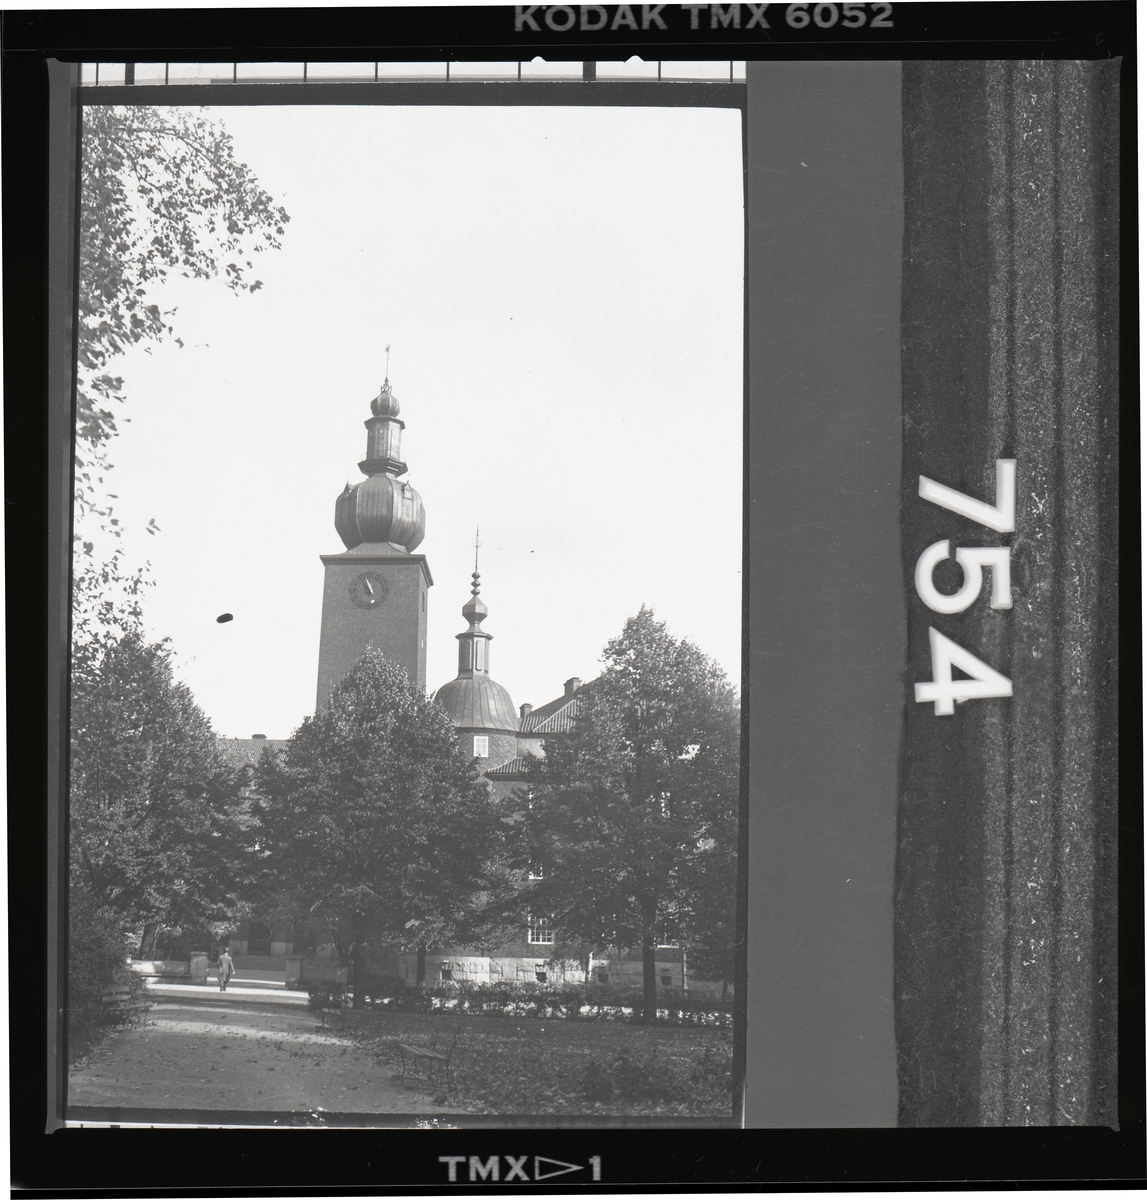 Ottarkontoret med klocktorn, Aseas huvudkontor, Västerås.